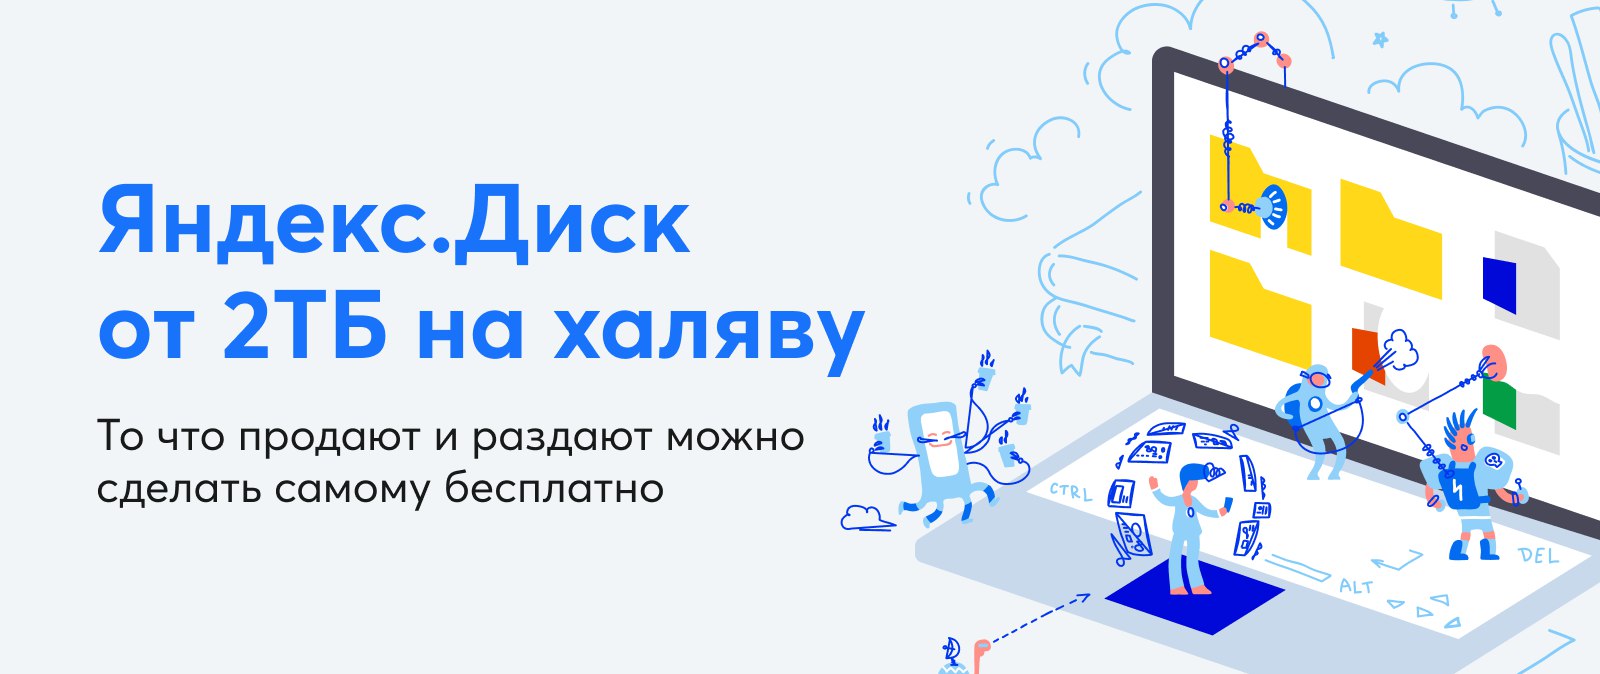 Яндекс диск 1 ТБ